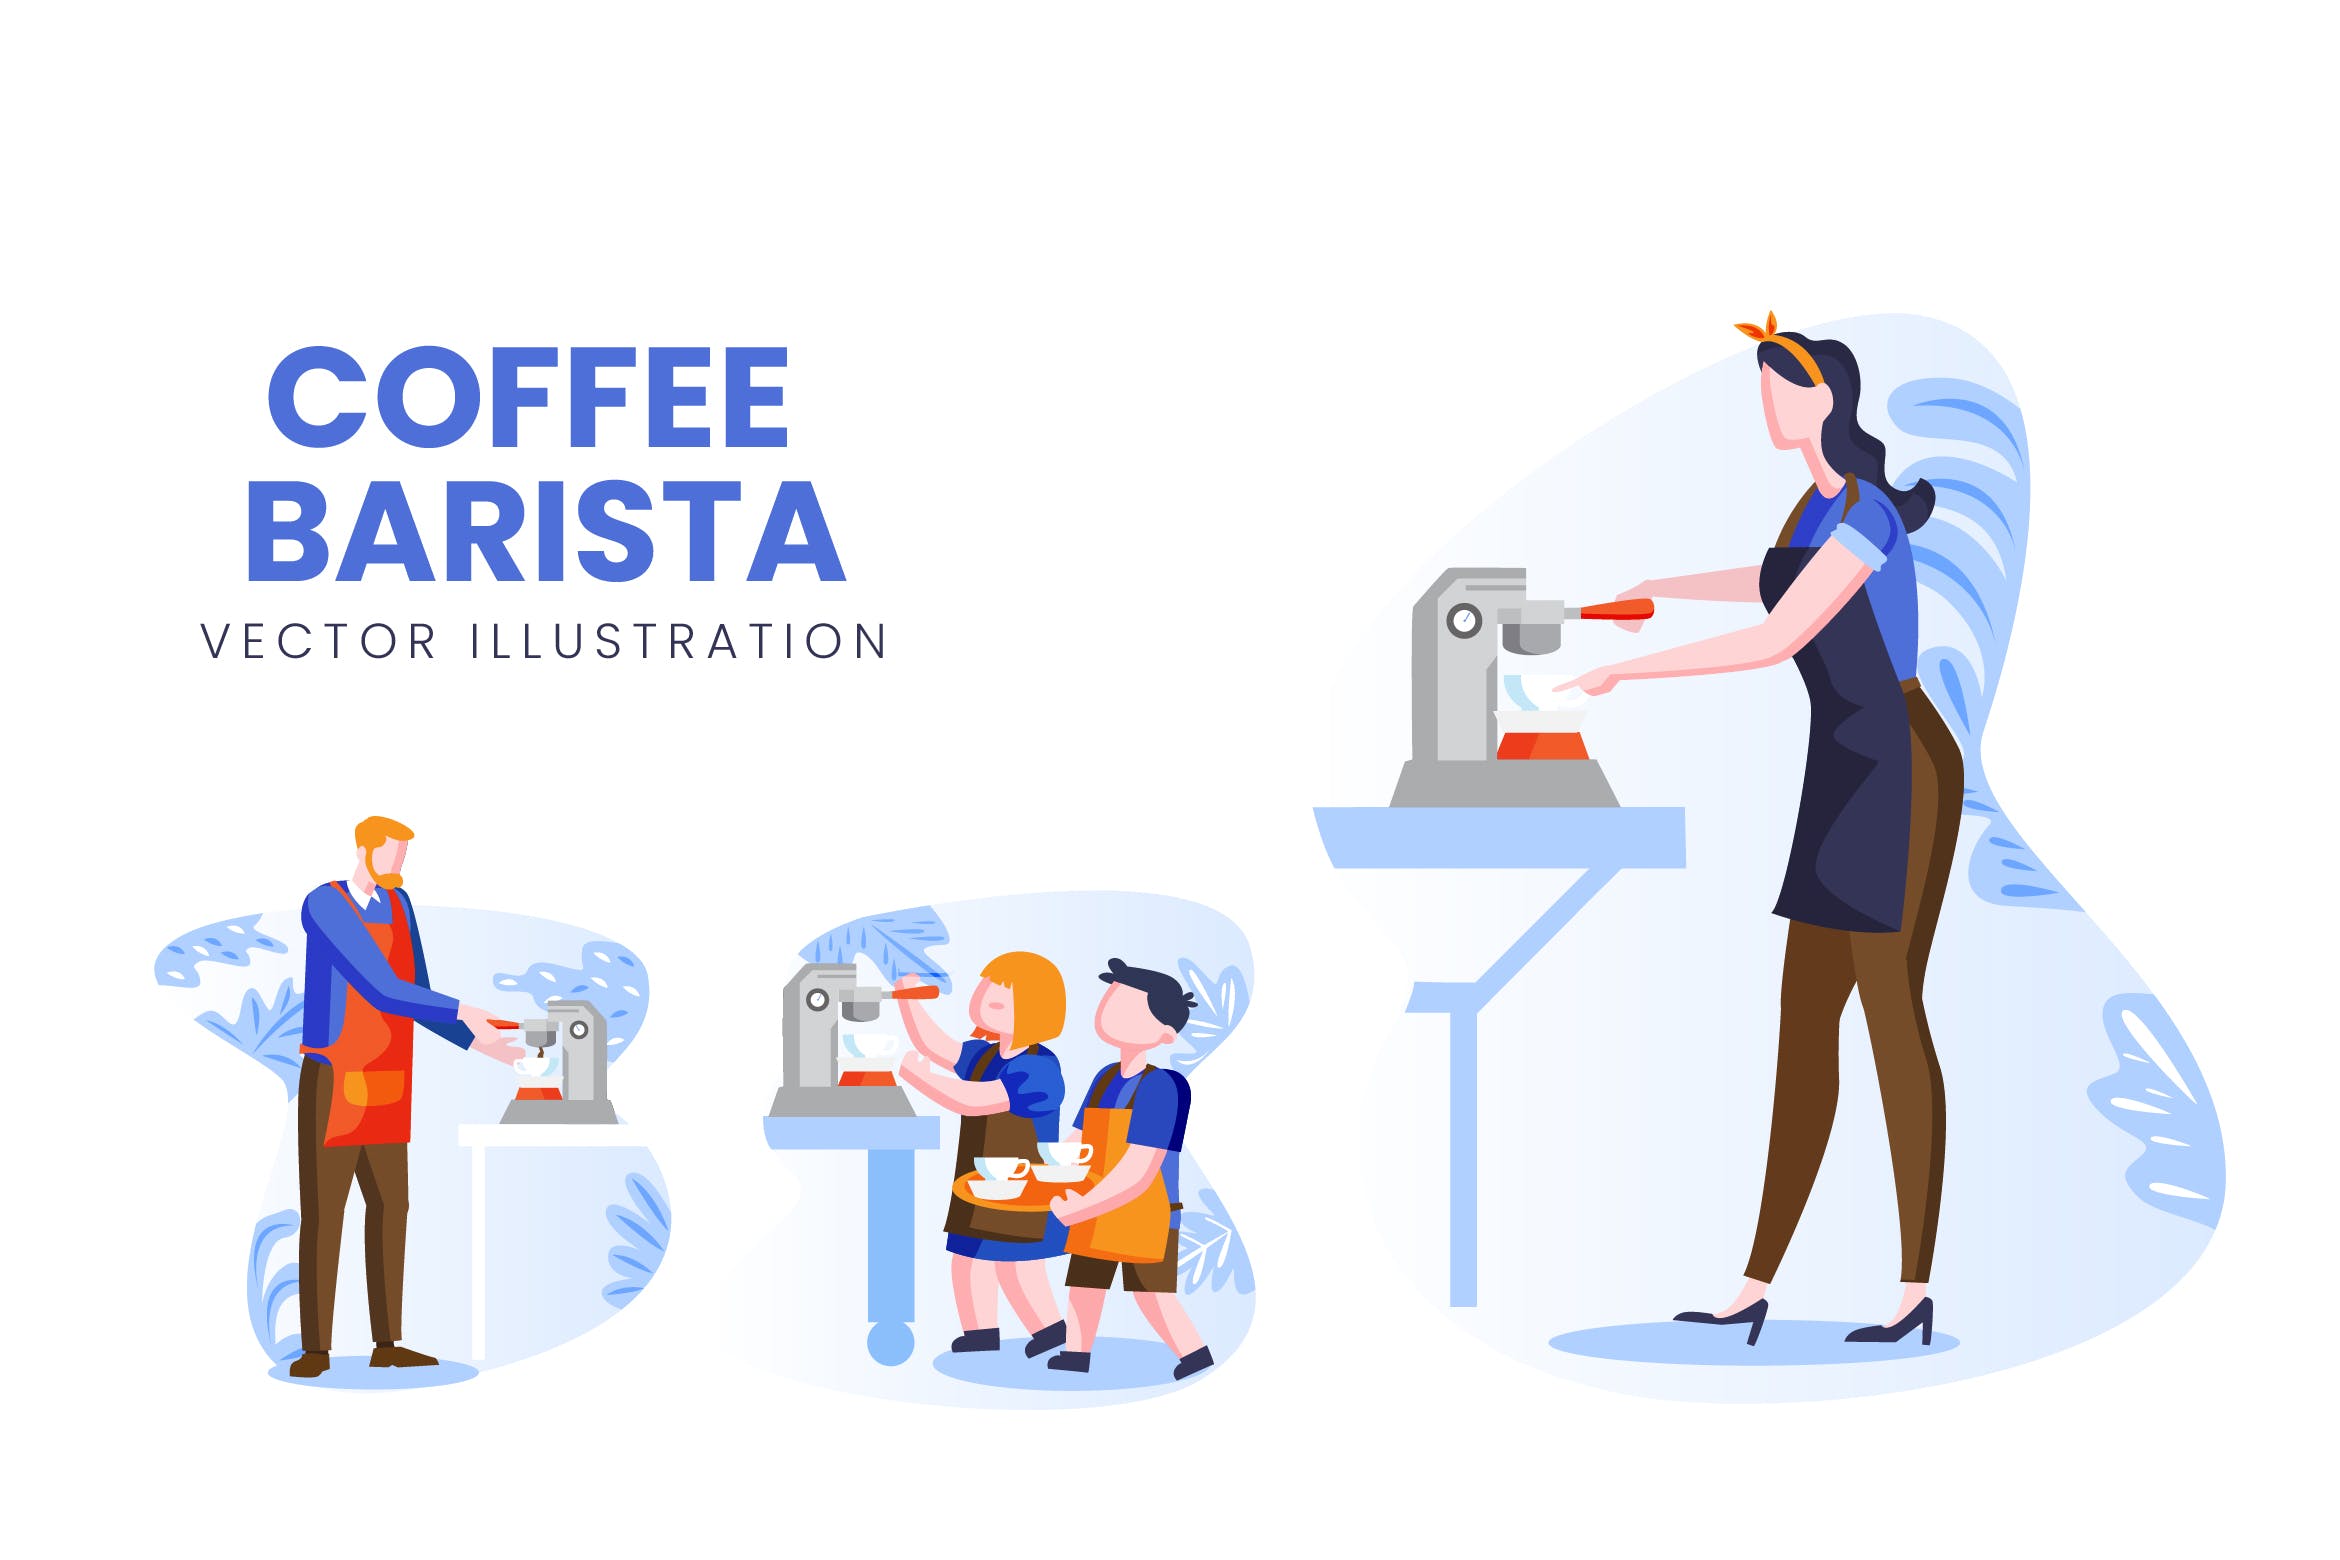 咖啡师人物形象第一素材精选手绘插画矢量素材 Coffee Barista Vector Character Set插图